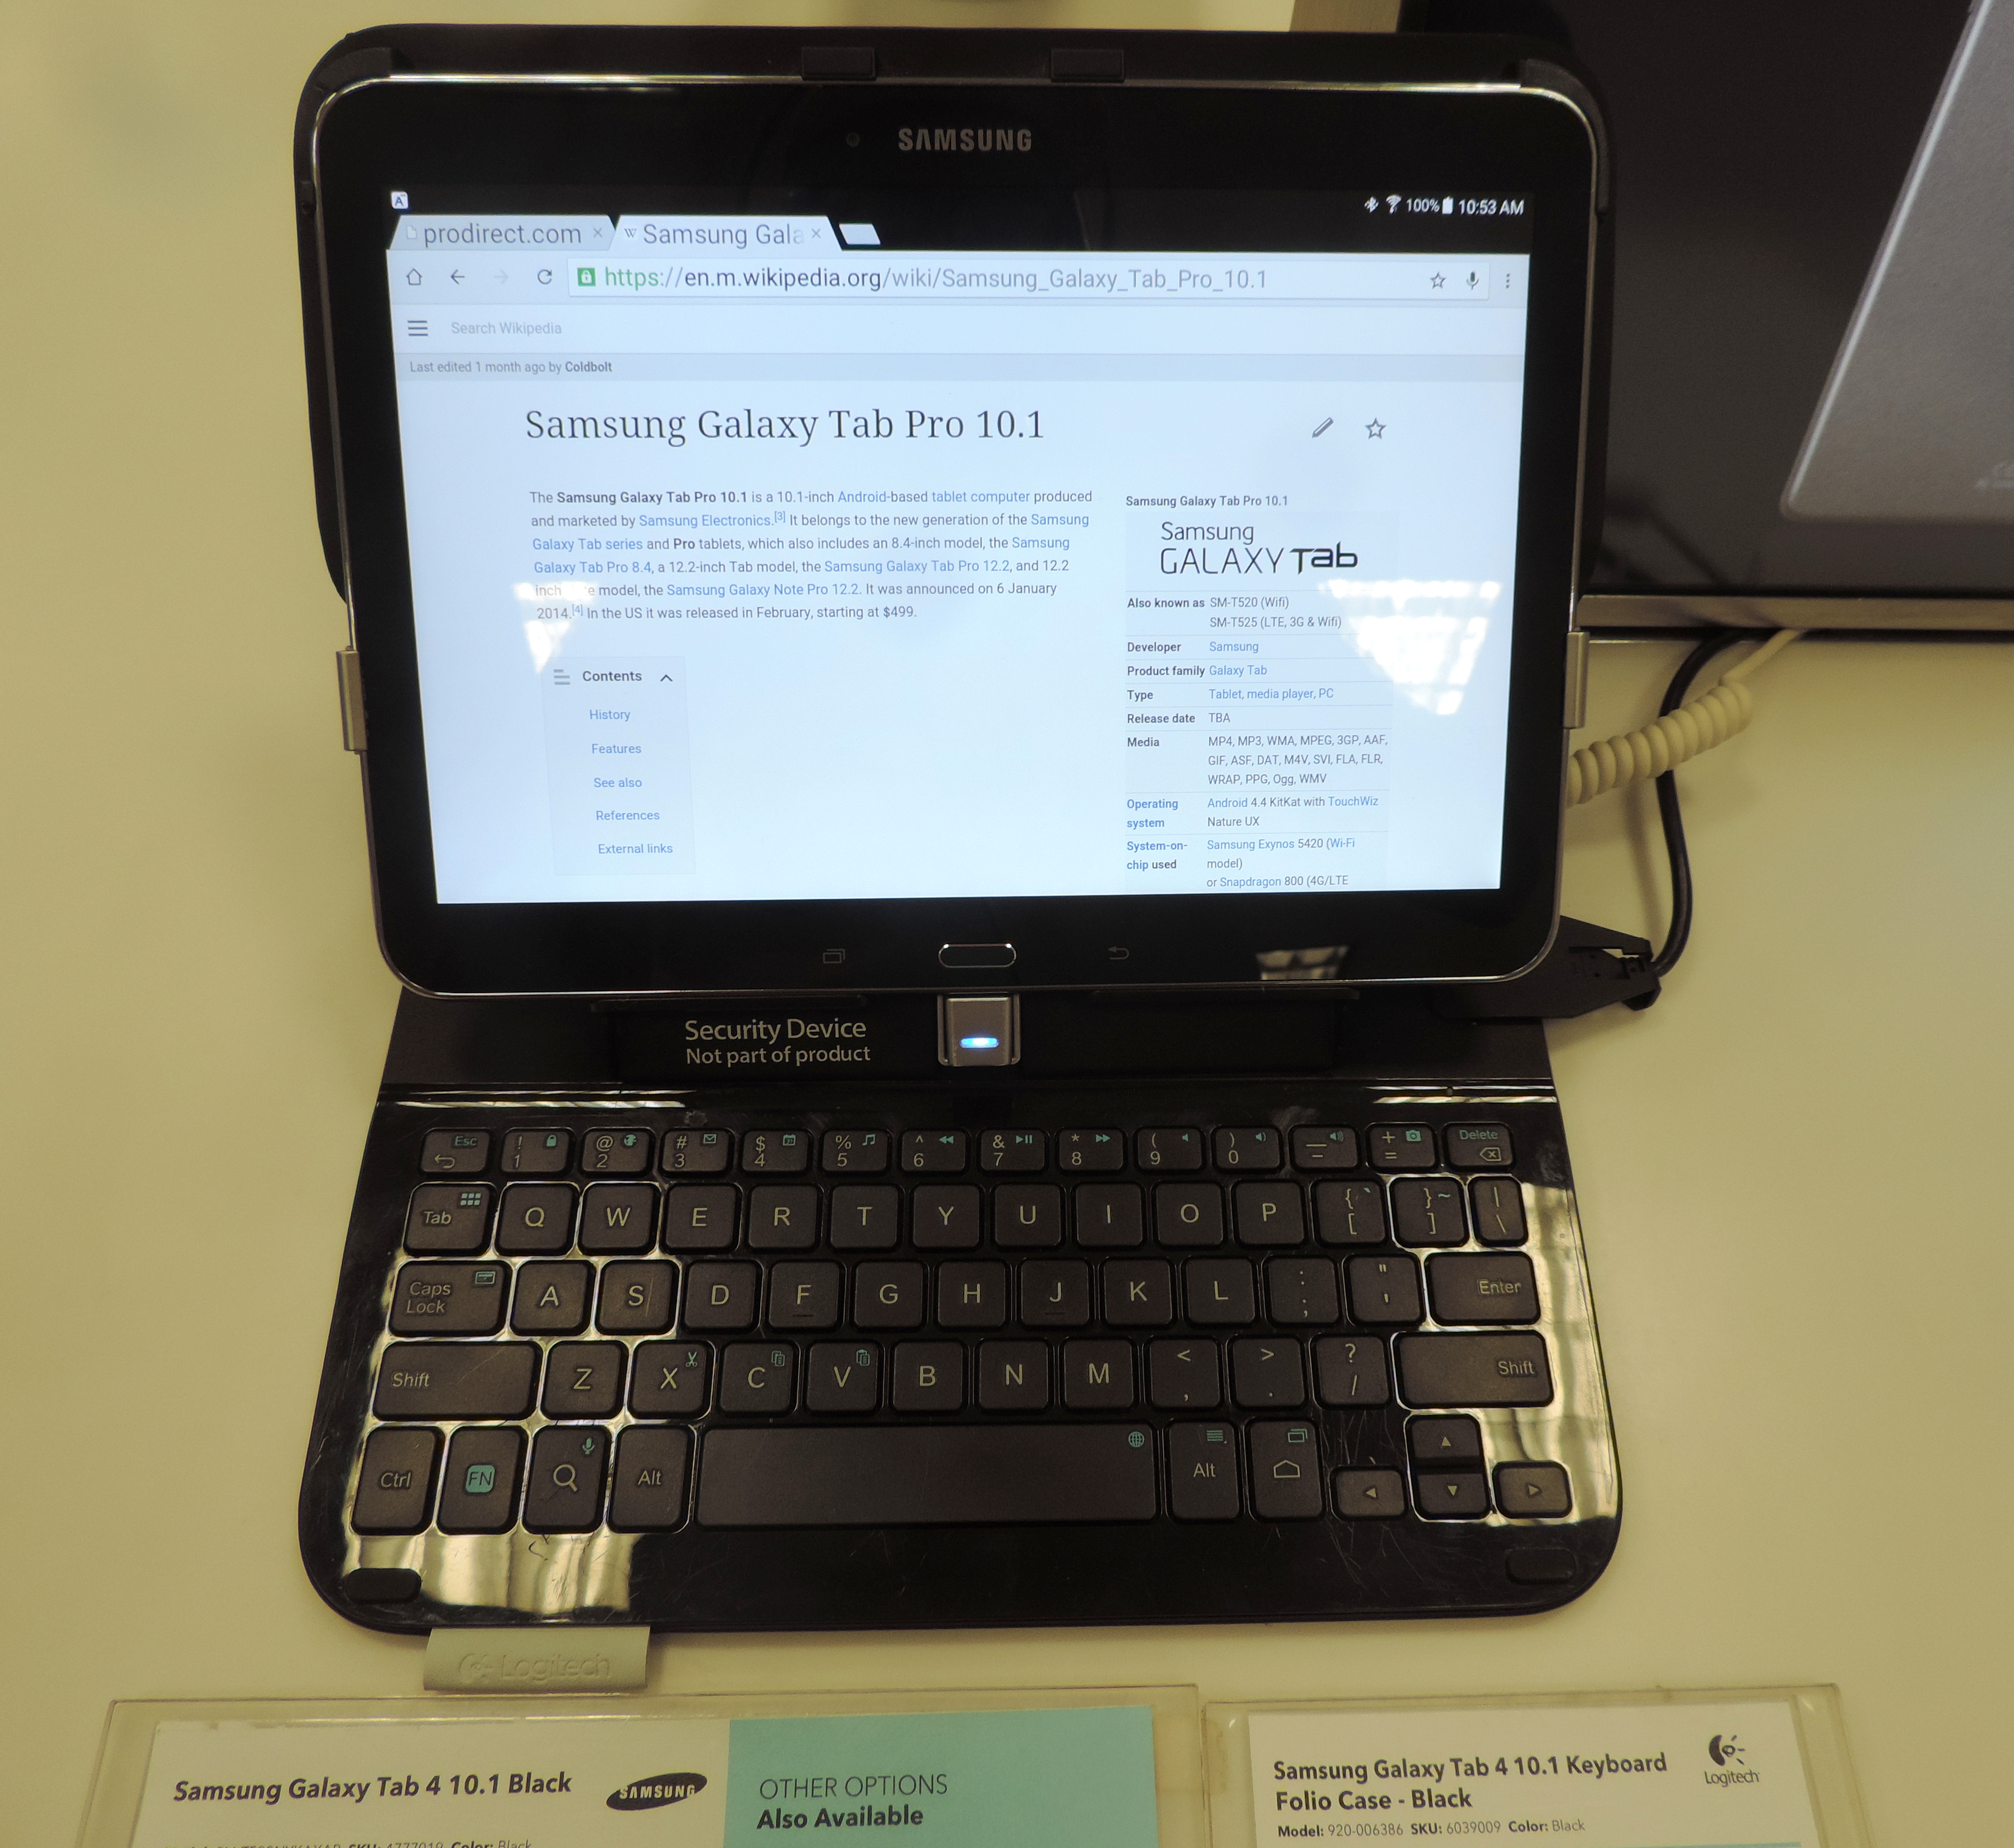 condado parrilla Amedrentador Samsung Galaxy Tab 4 10.1 - Wikipedia